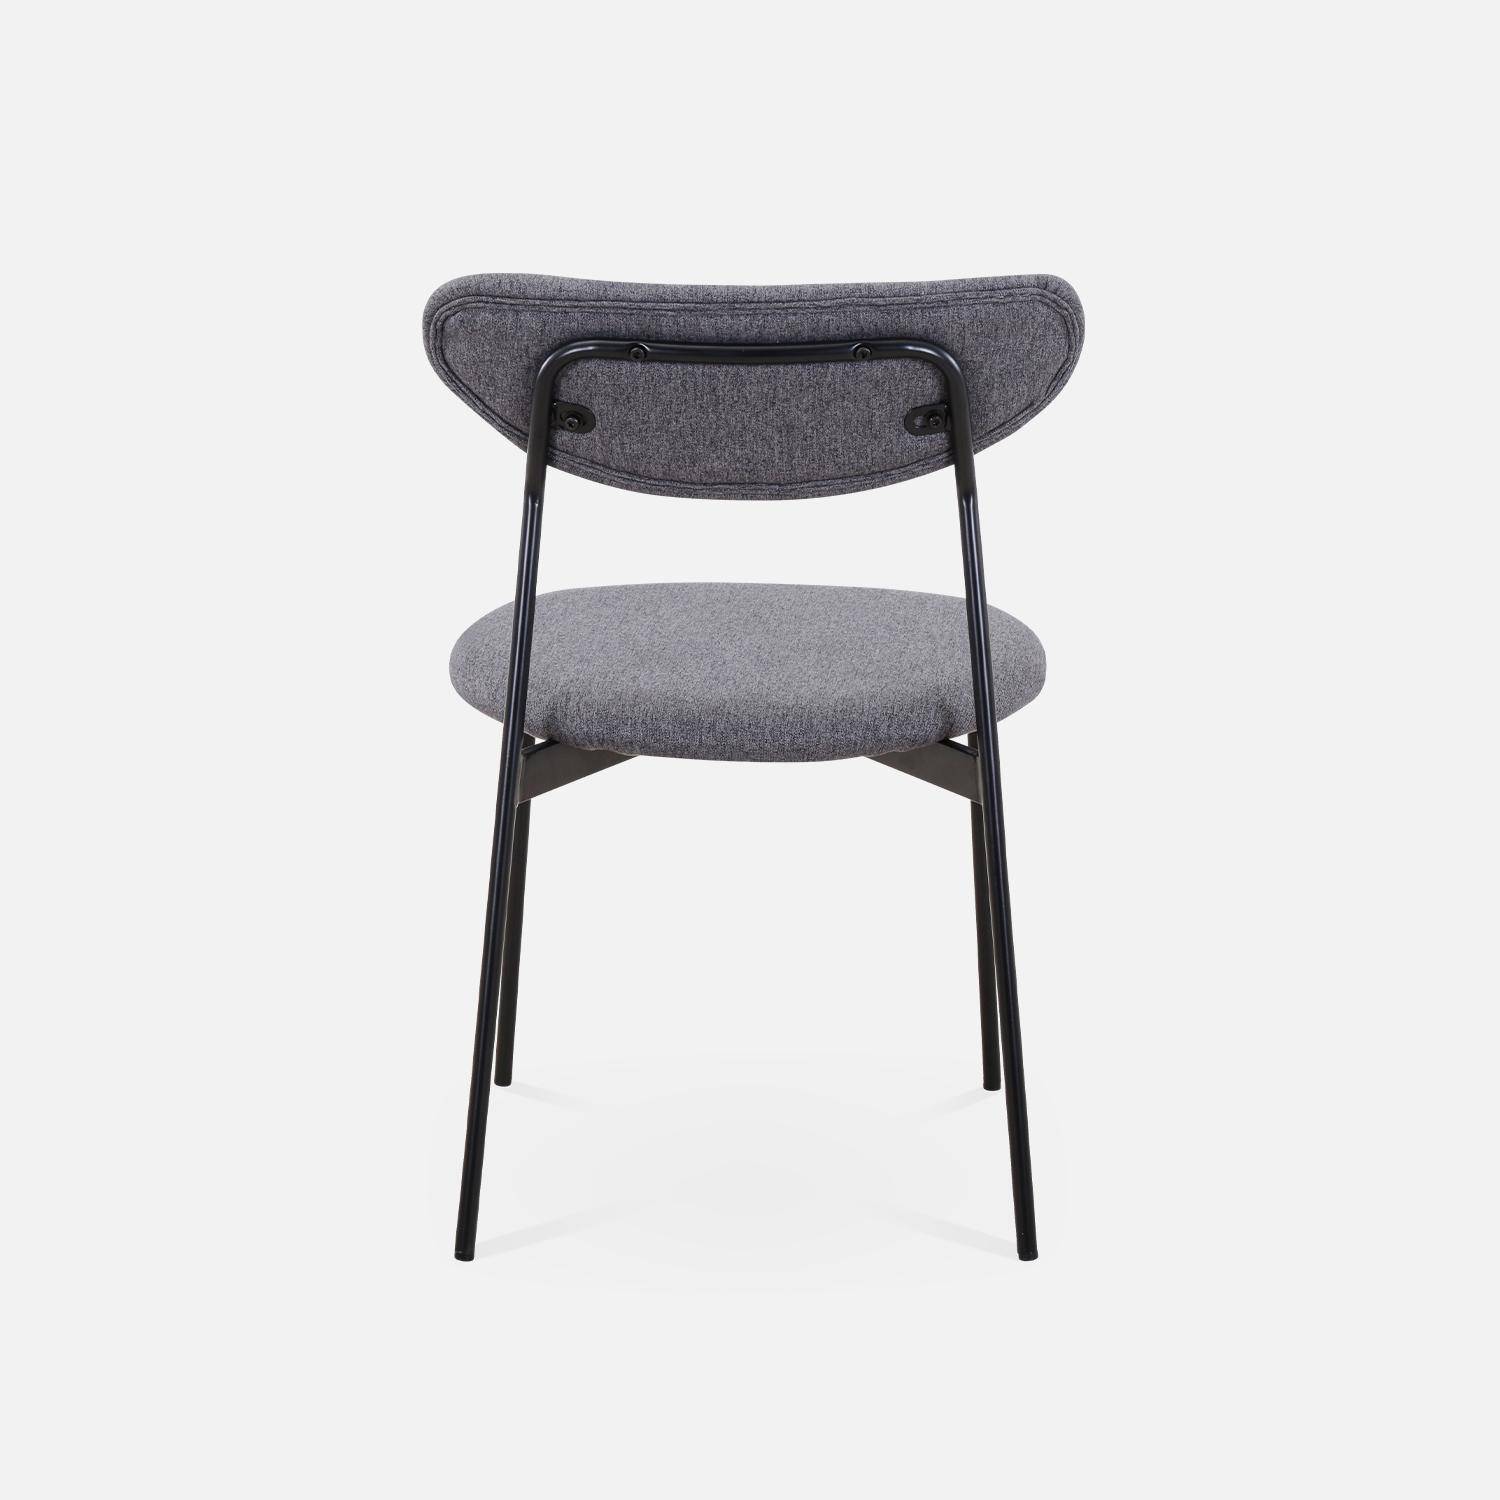 Juego de 4 sillas - Arty - Escandinavas y vintage, asiento y respaldo gris oscuro, patas de acero  Photo6